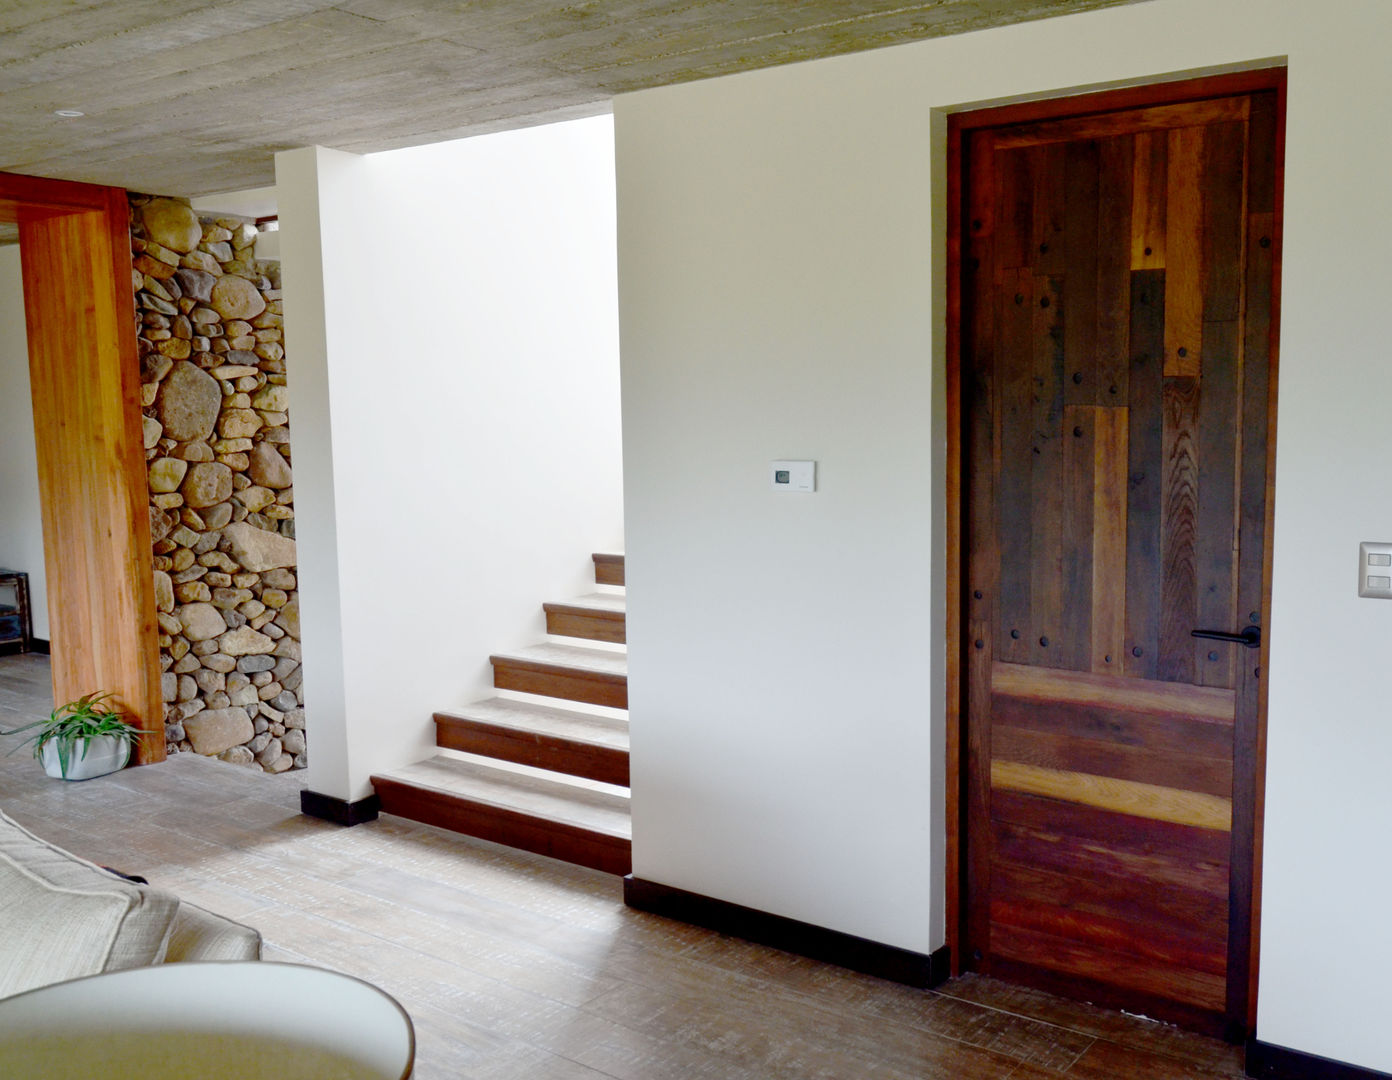 Escalera, piso y puerta interior en base a duelas. Ignisterra S.A. Puertas y ventanas rústicas Madera Acabado en madera